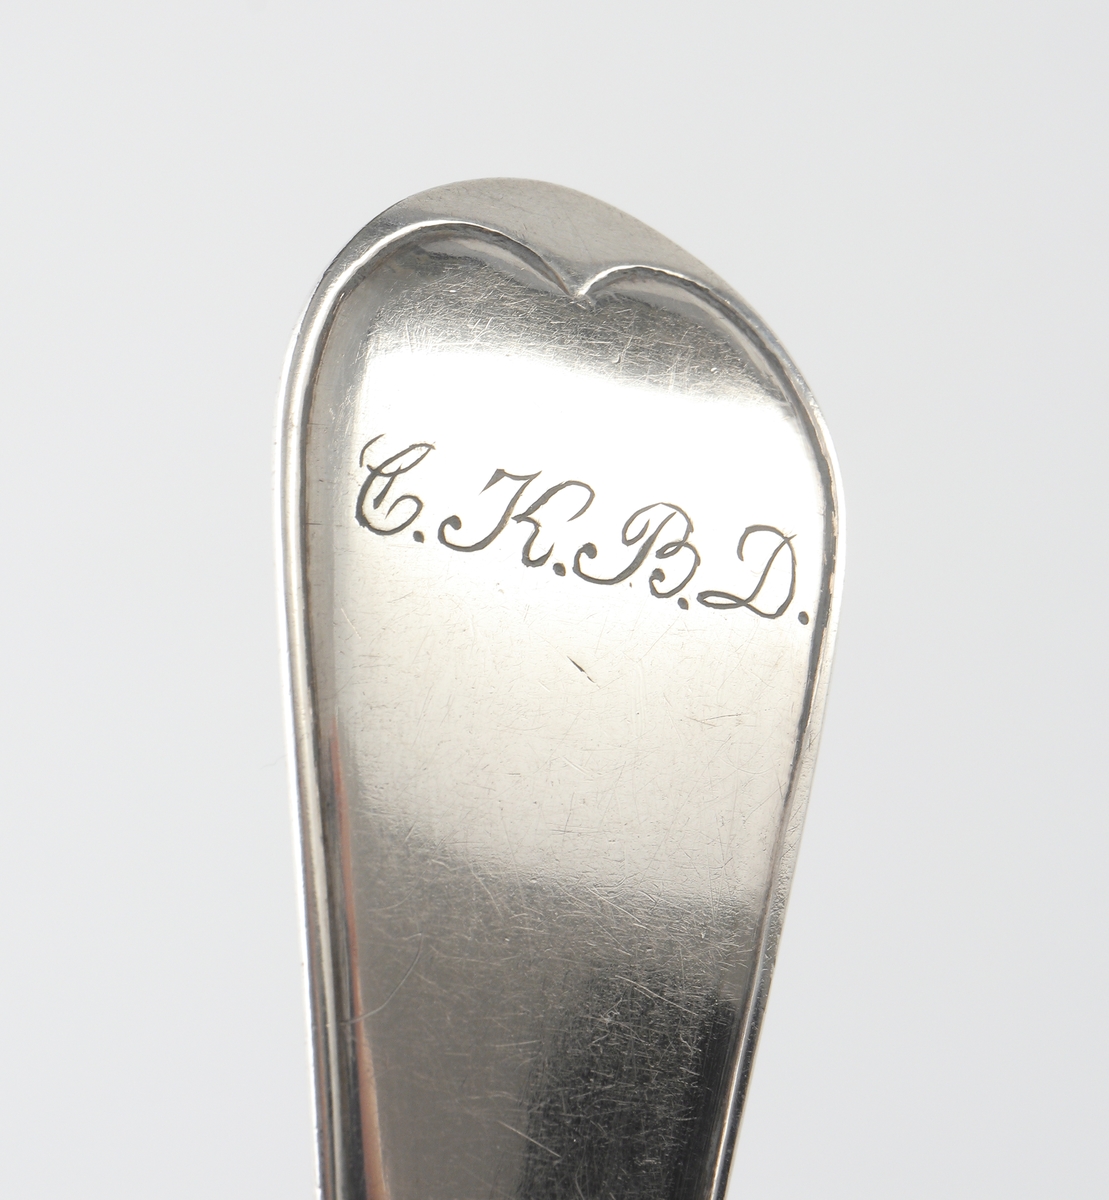 Matsked i silver.
Trubbig svensk modell. Ägarinitialer: "C.K., B.D." på baksidan av skaftet. Stämplar på baksidan av skaftet.